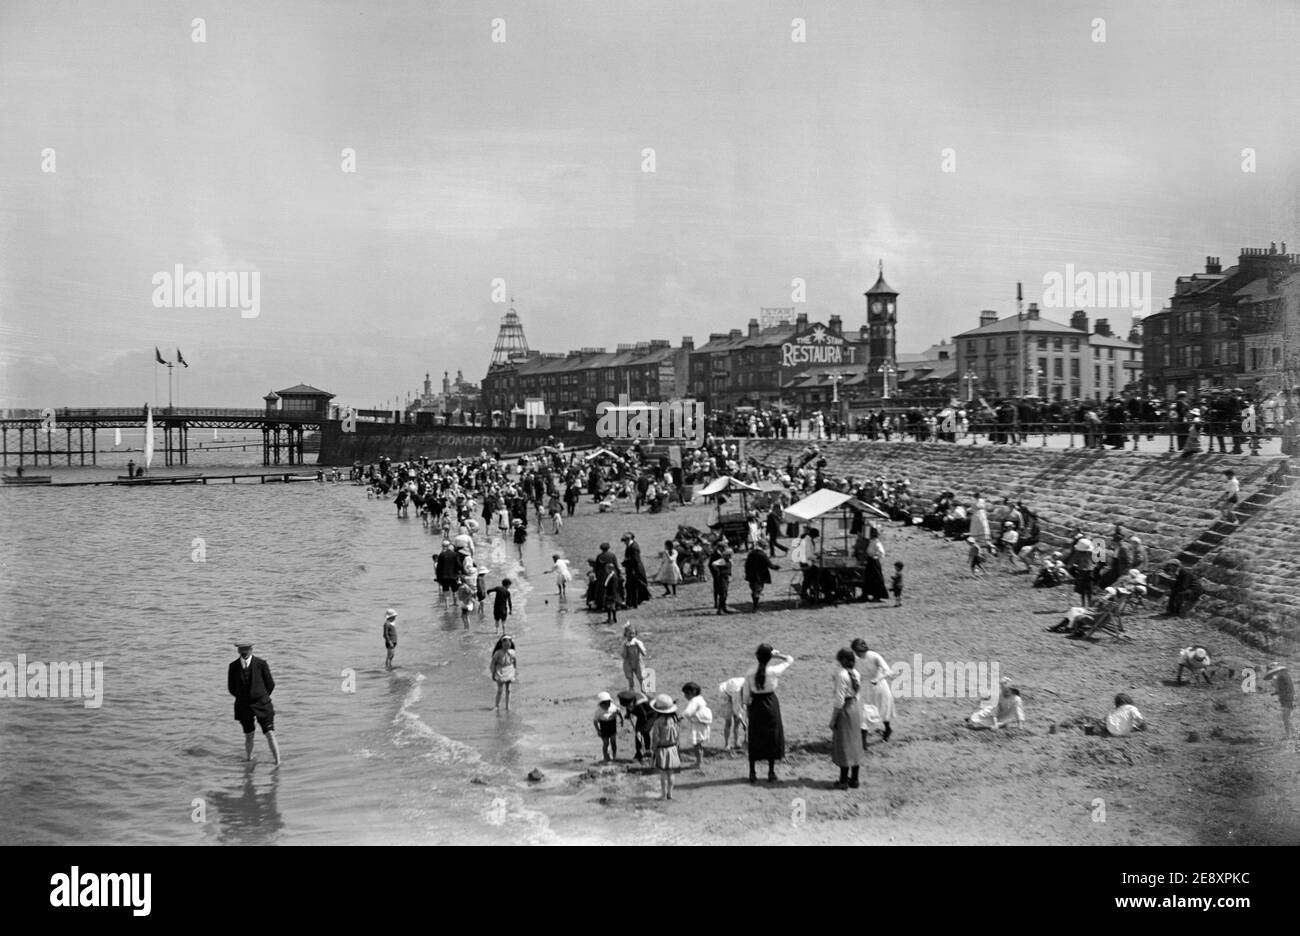 Photographie noir et blanc de la fin de l'époque victorienne montrant des gens qui apprécient leurs vacances sur une plage en Angleterre. Banque D'Images